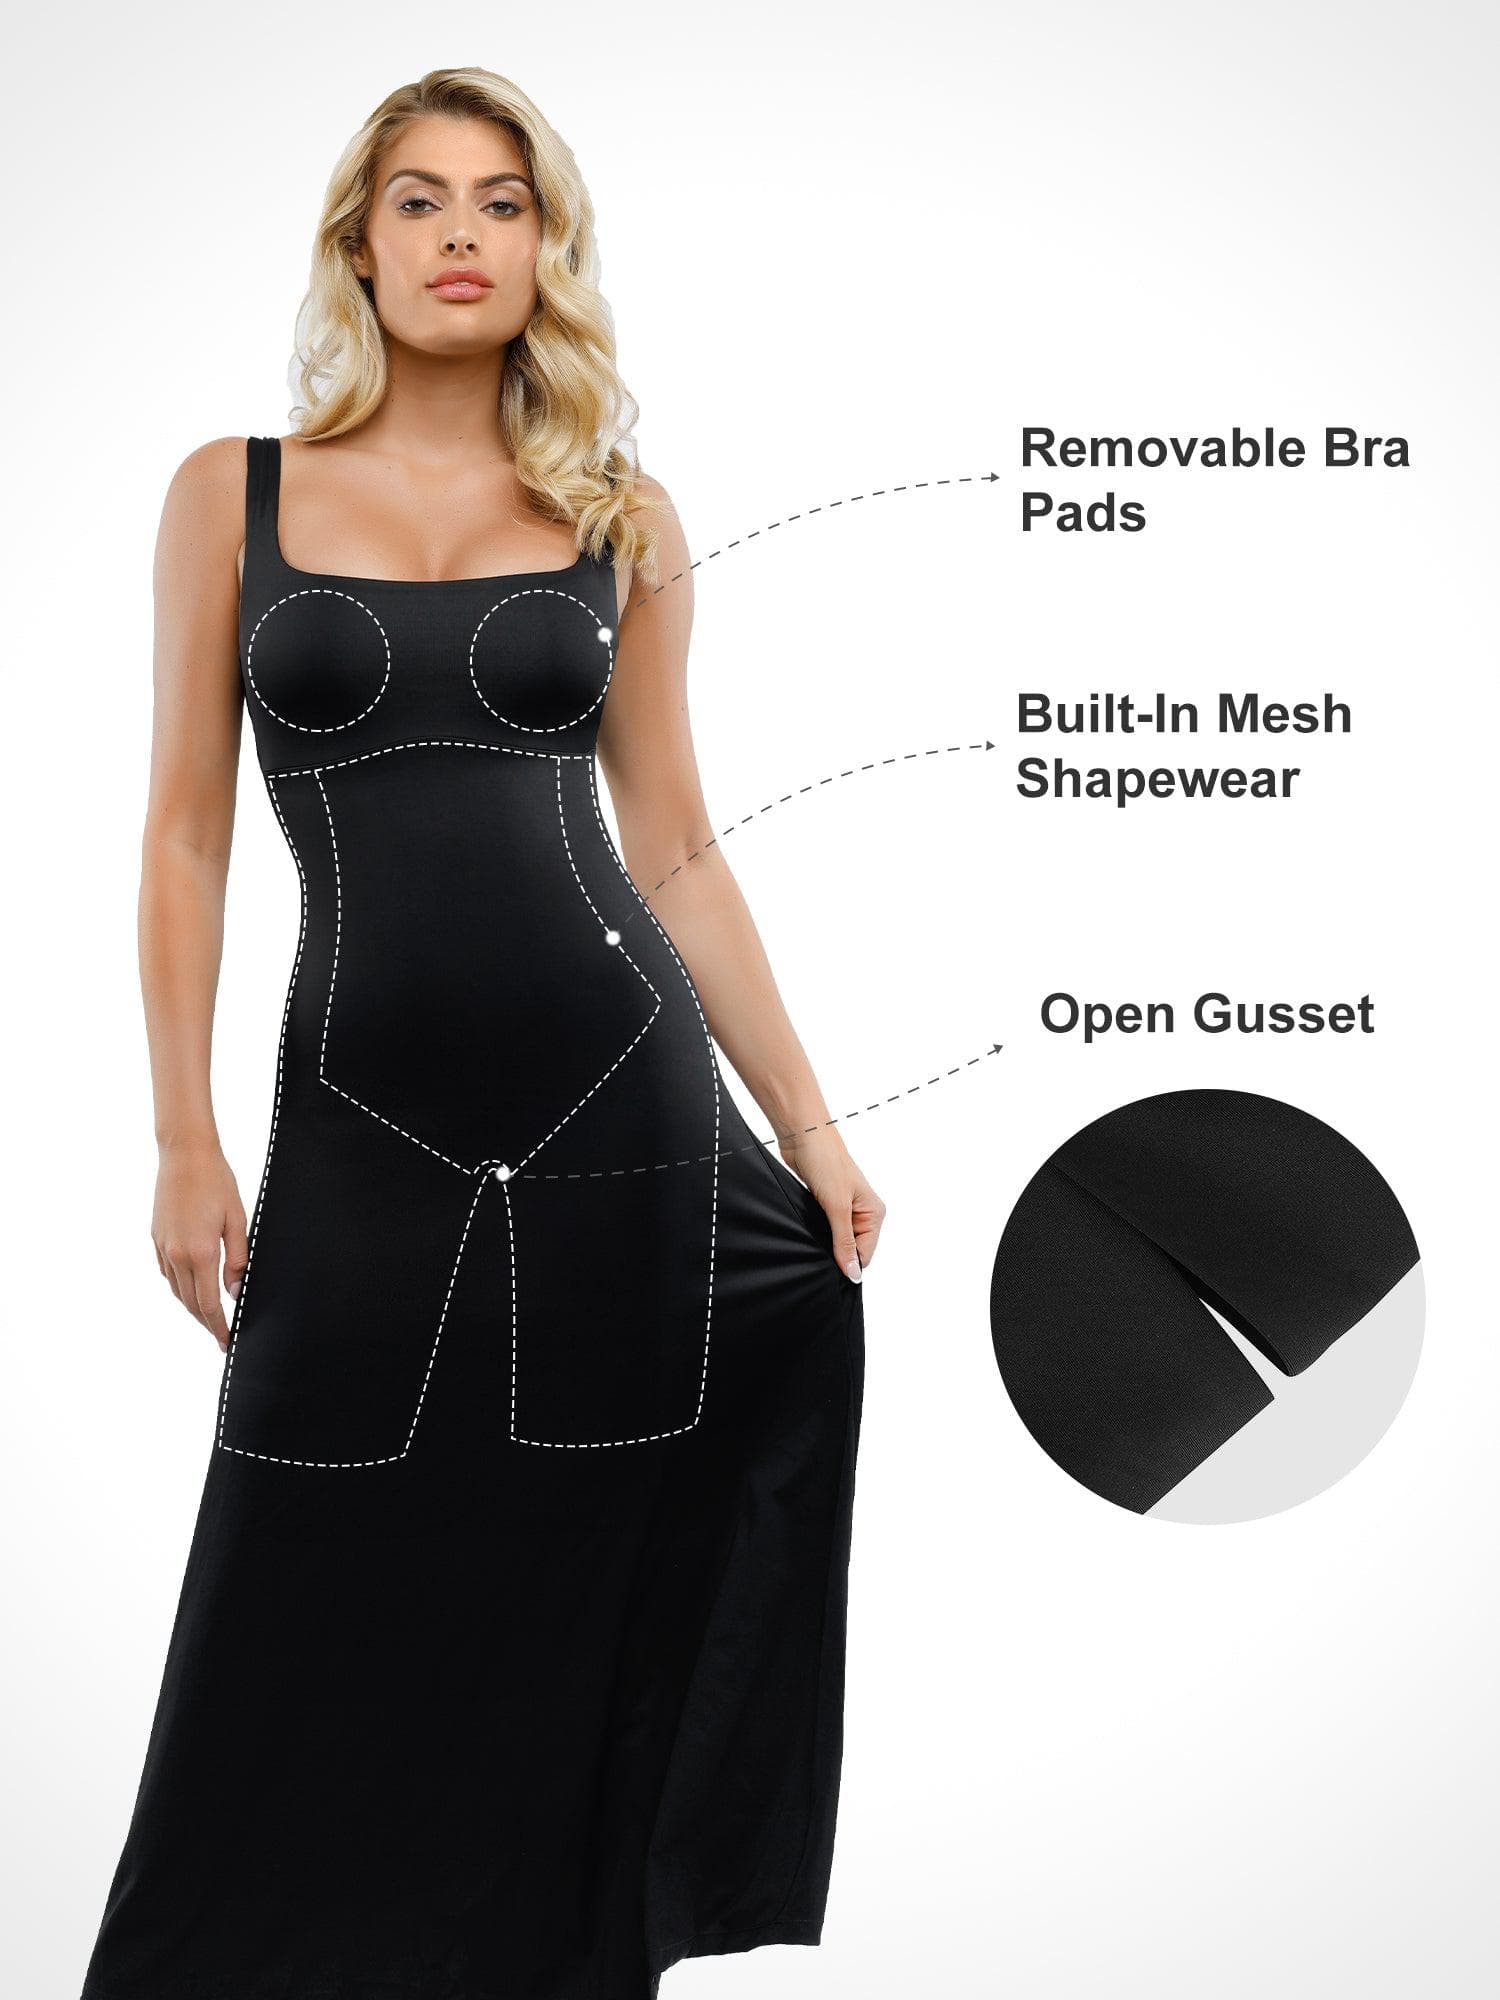 Try on @popilush shapewear dress with me! @popilush_collaboration